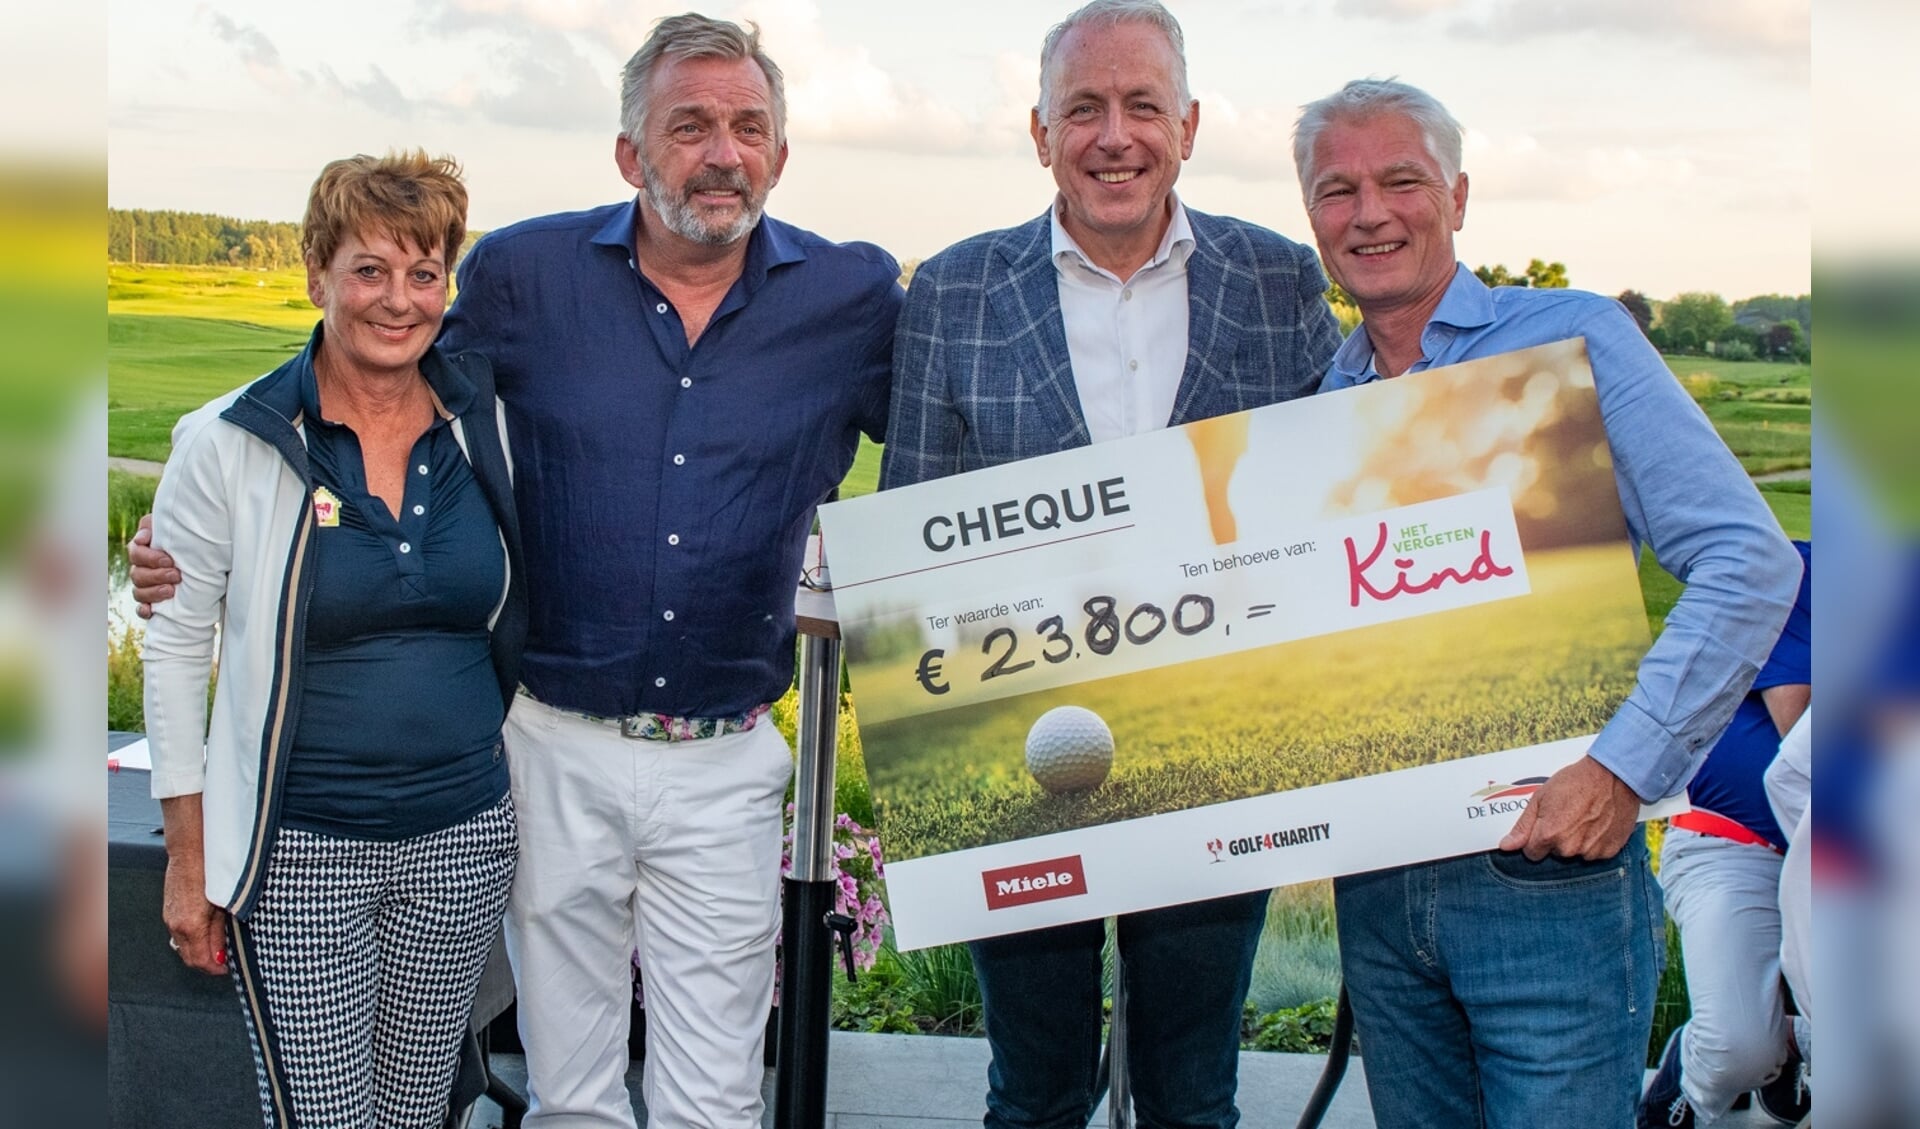 Het Miele & Golf4Charity golf event heeft 23.800 euro opgebracht voor Stichting Het Vergeten Kind.